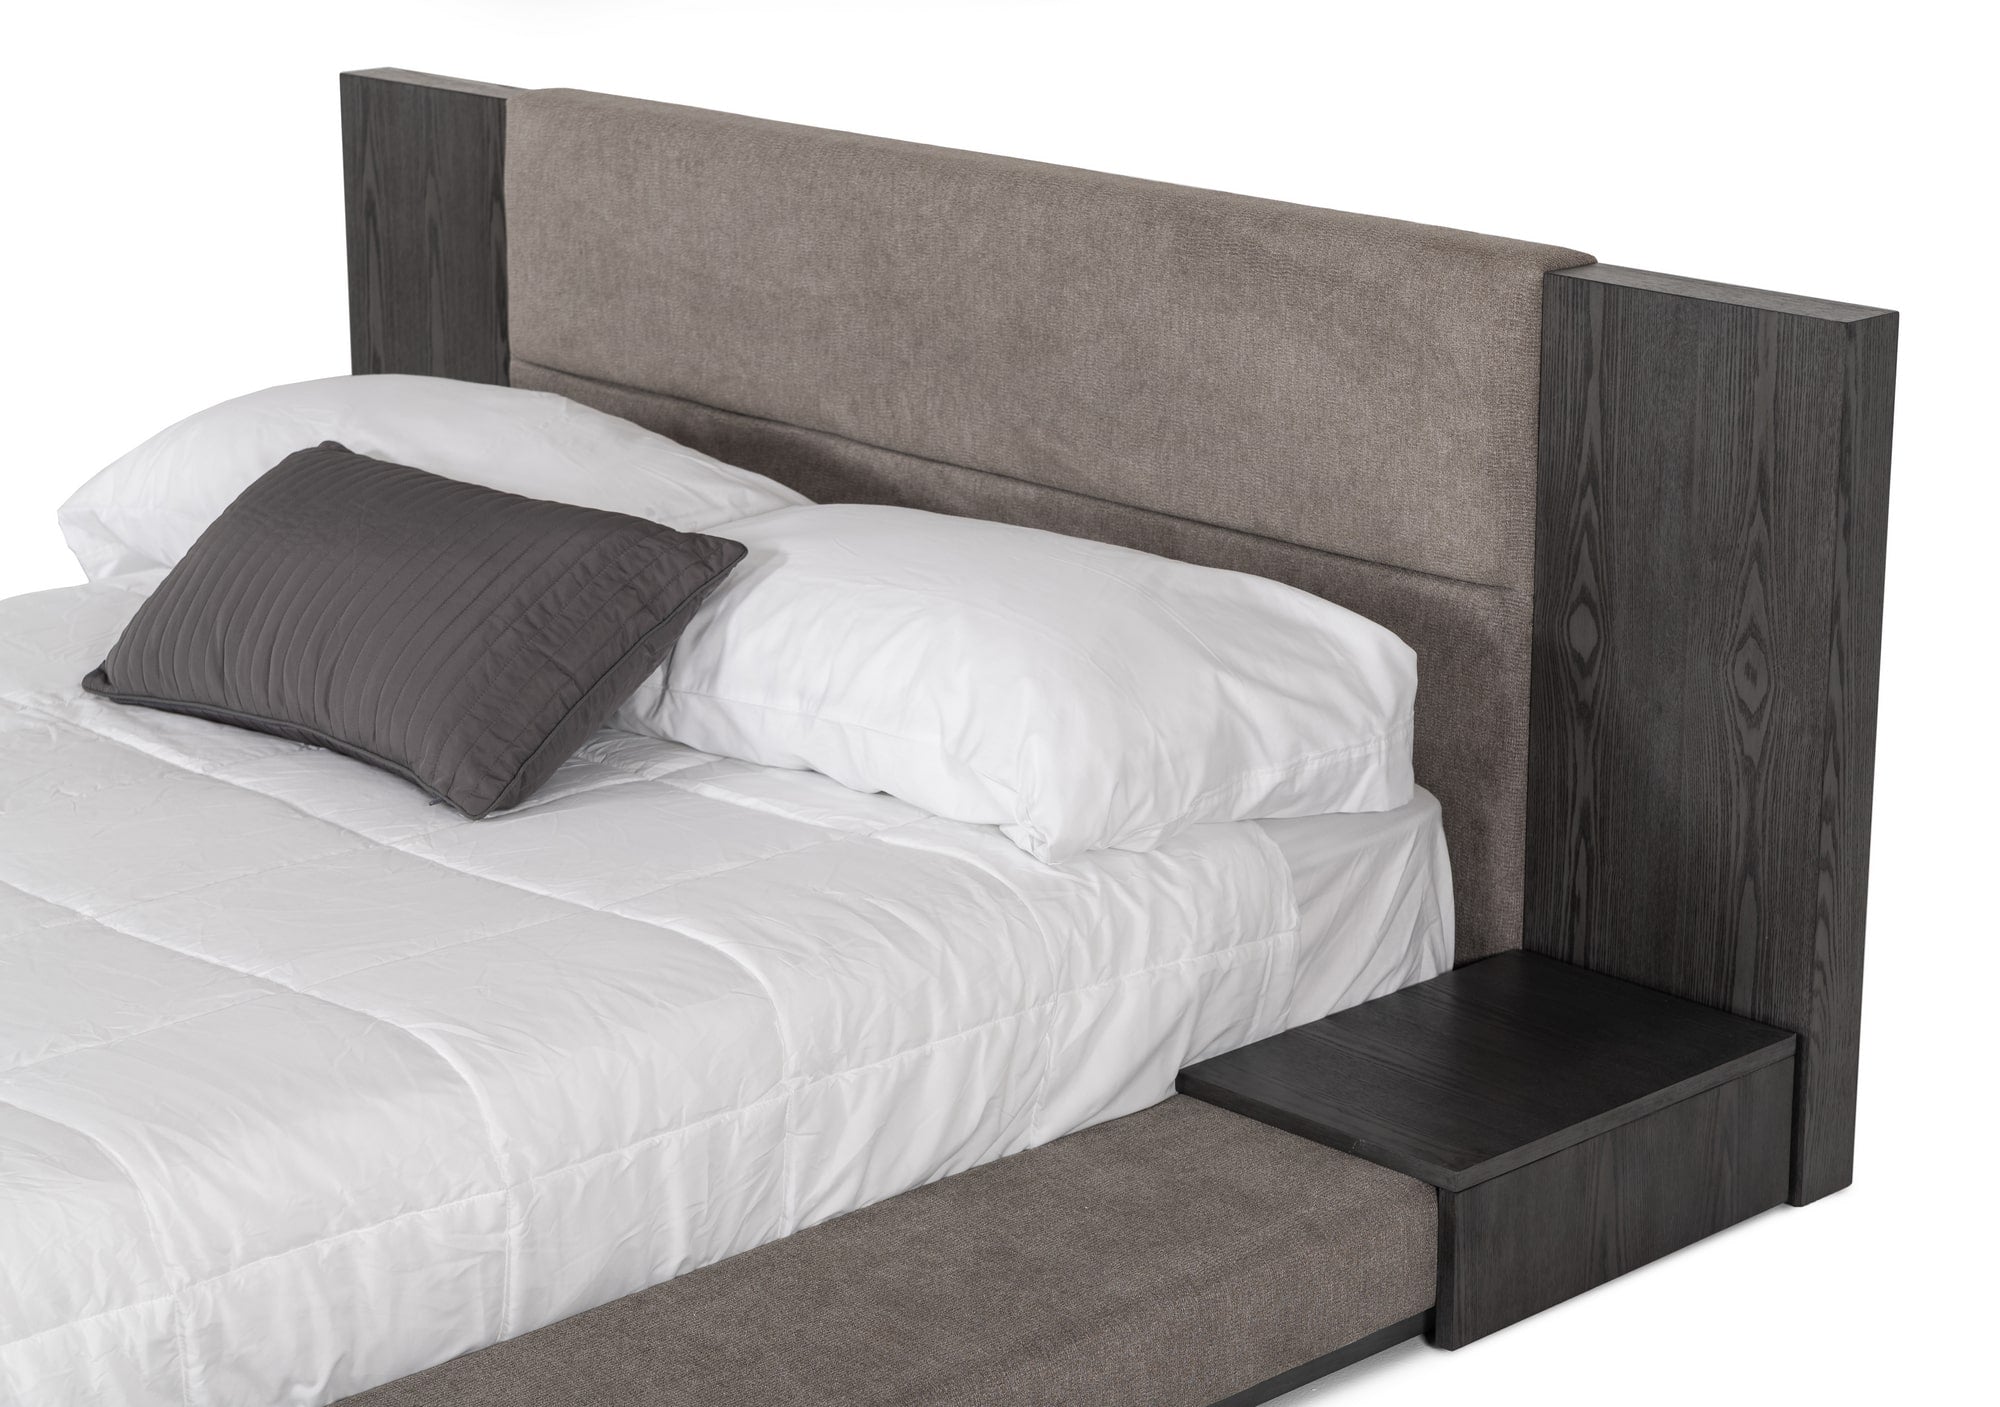 Nova Domus Jagger Modern Grey Bed-Bed-VIG-Wall2Wall Furnishings